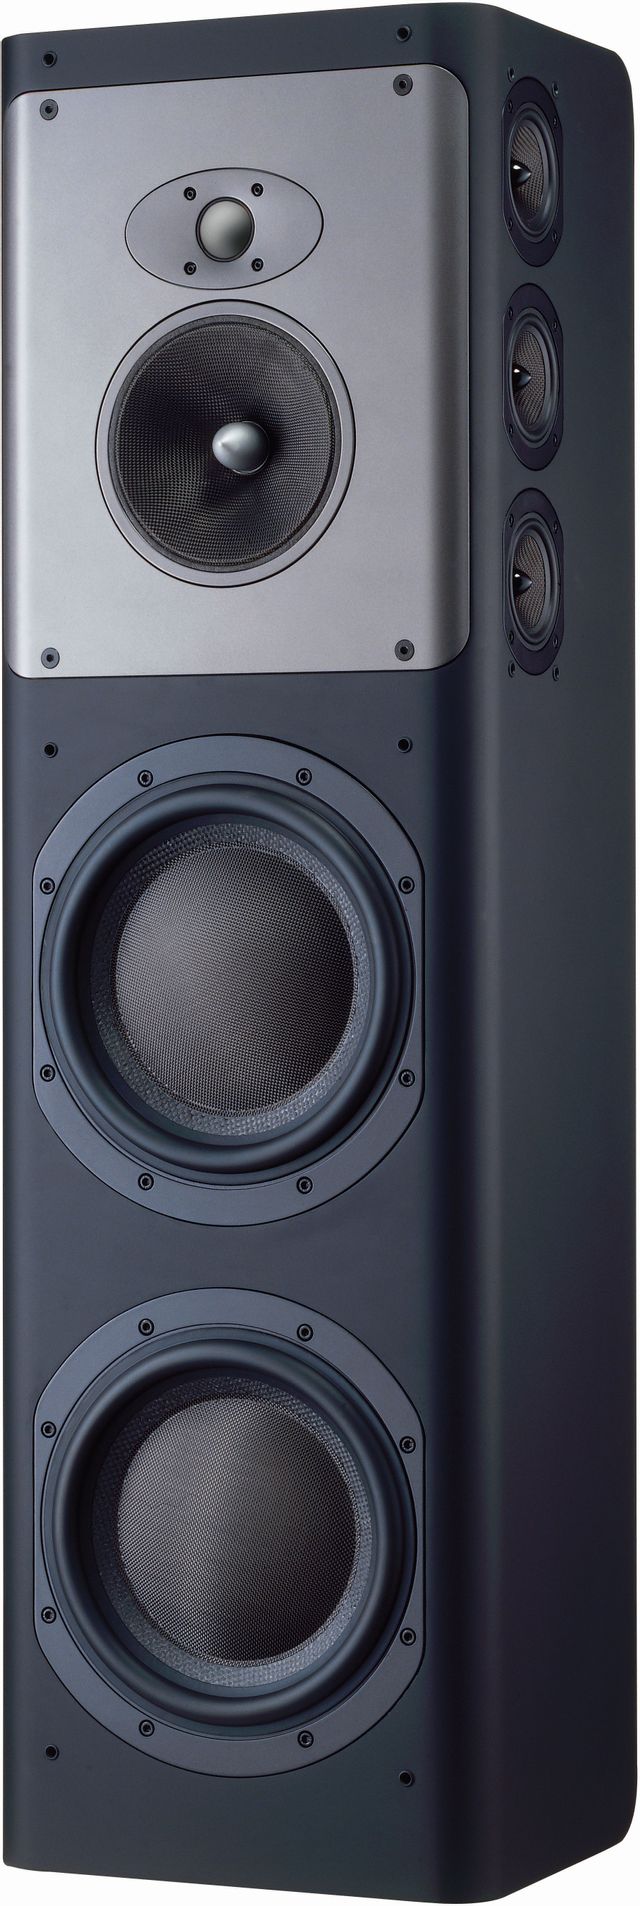 Bowers & Wilkins CT8 DS Surround Speaker-Black-CT8 DS